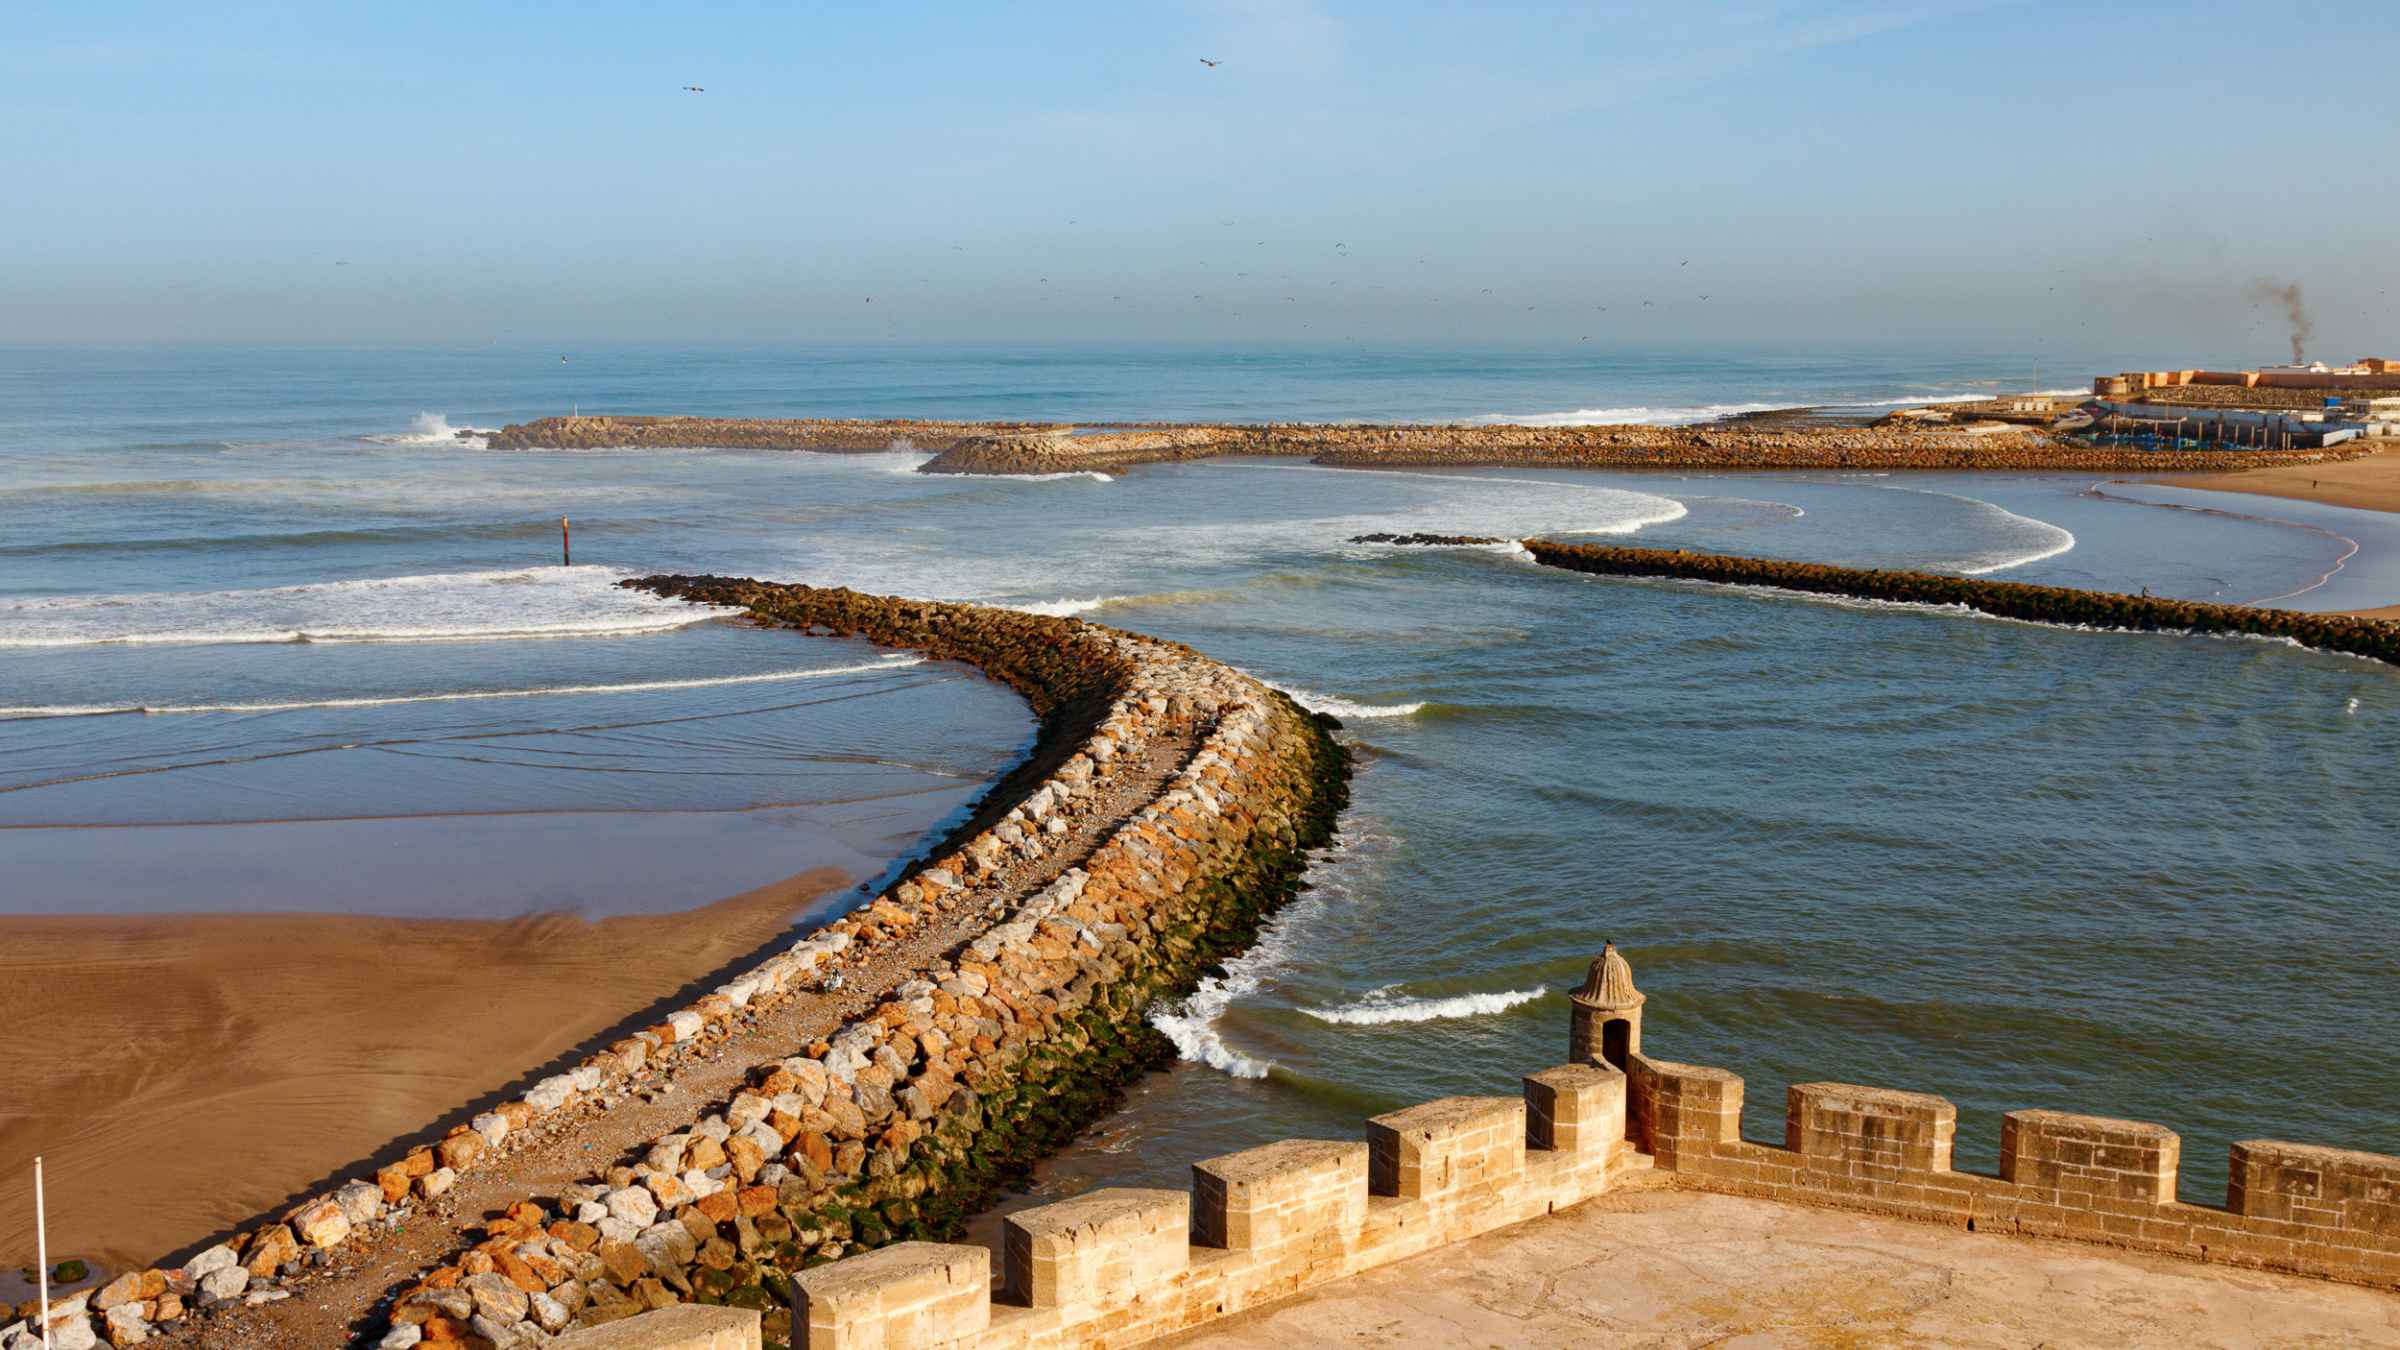 Rabat Sale Kenitra 2021 Top 10 Touren Aktivitaten Mit Fotos Erlebnisse In Rabat Sale Kenitra Marokko Getyourguide